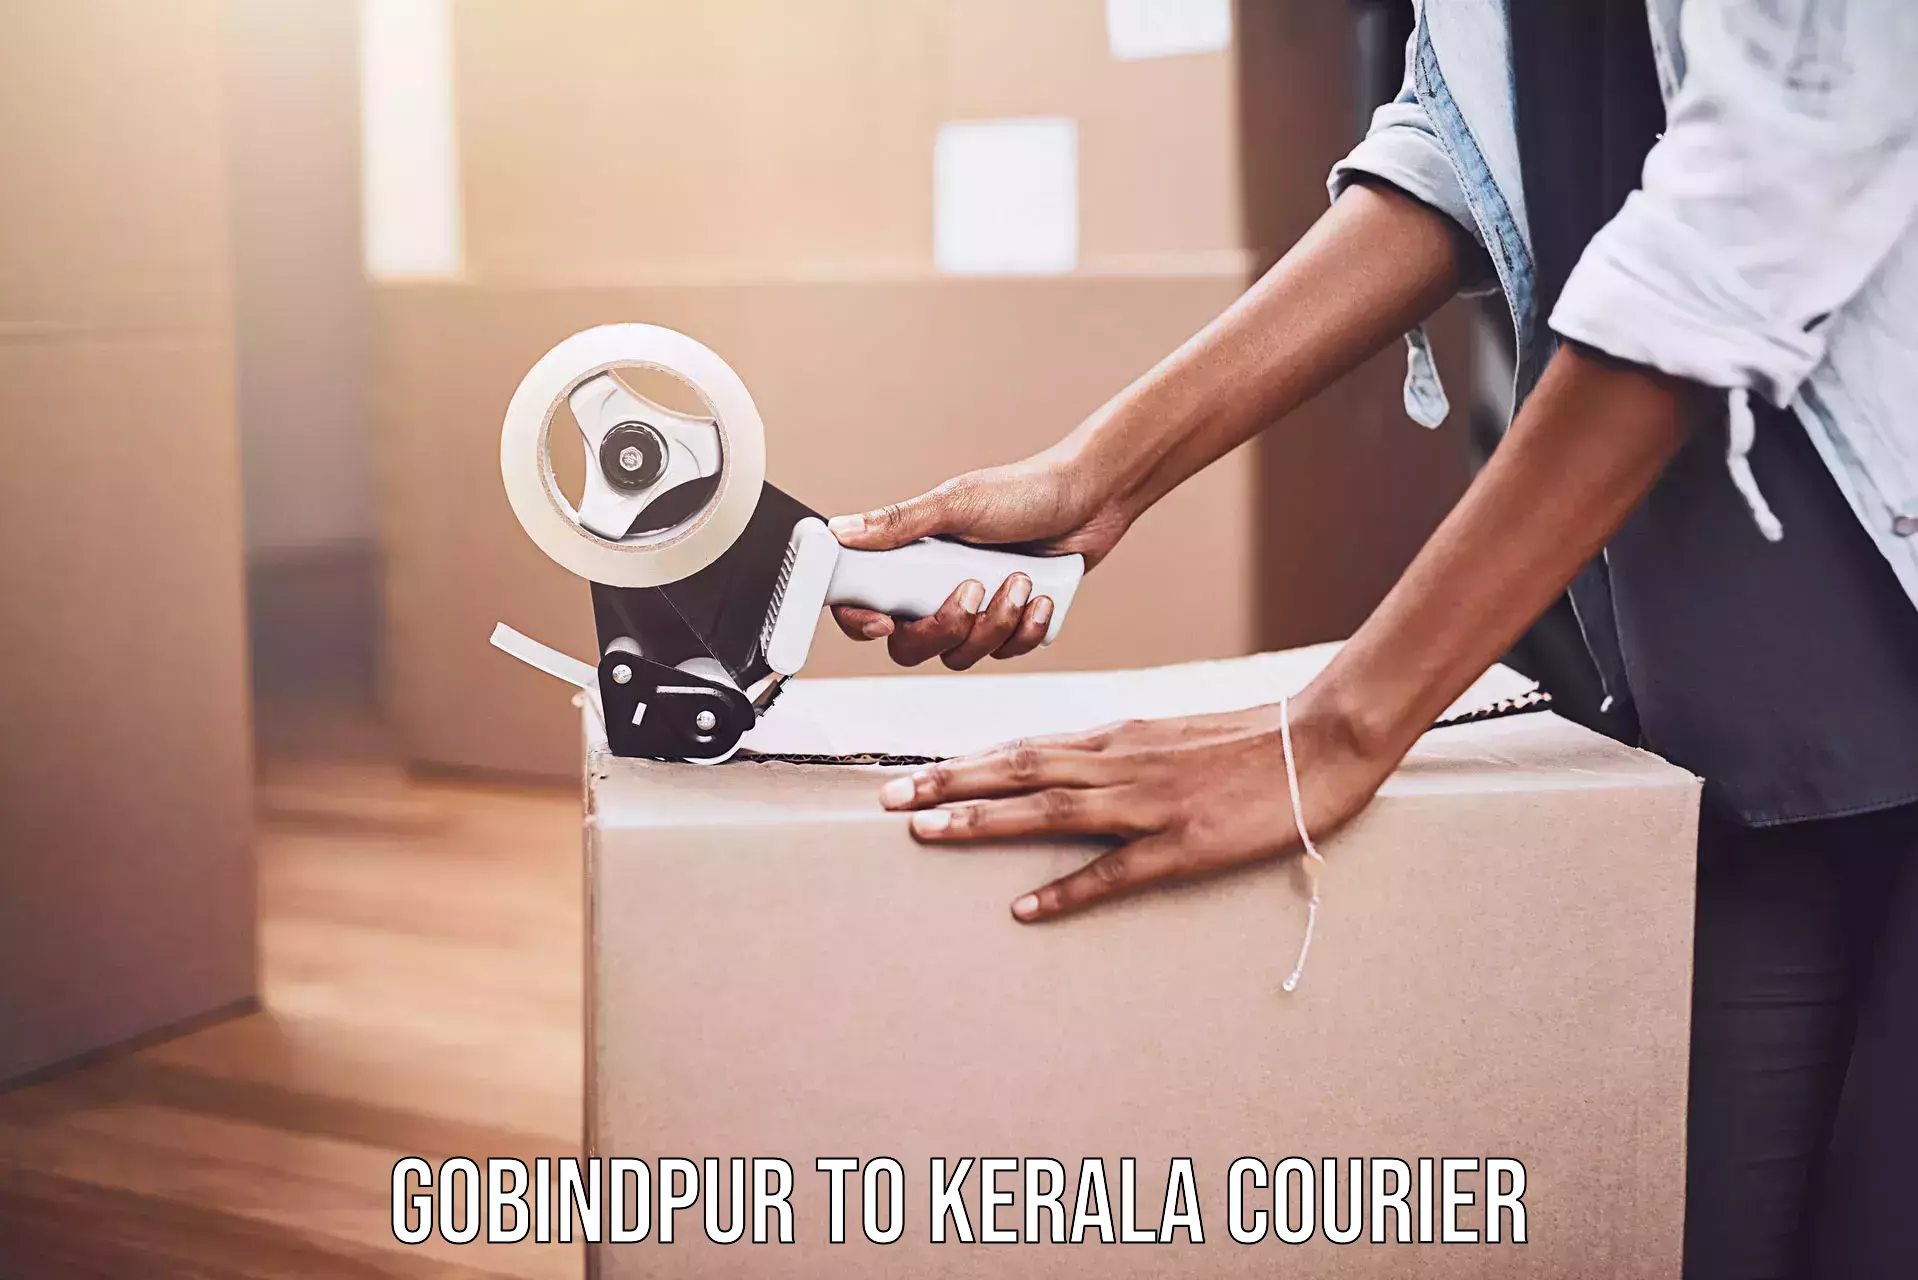 User-friendly delivery service Gobindpur to Perambra